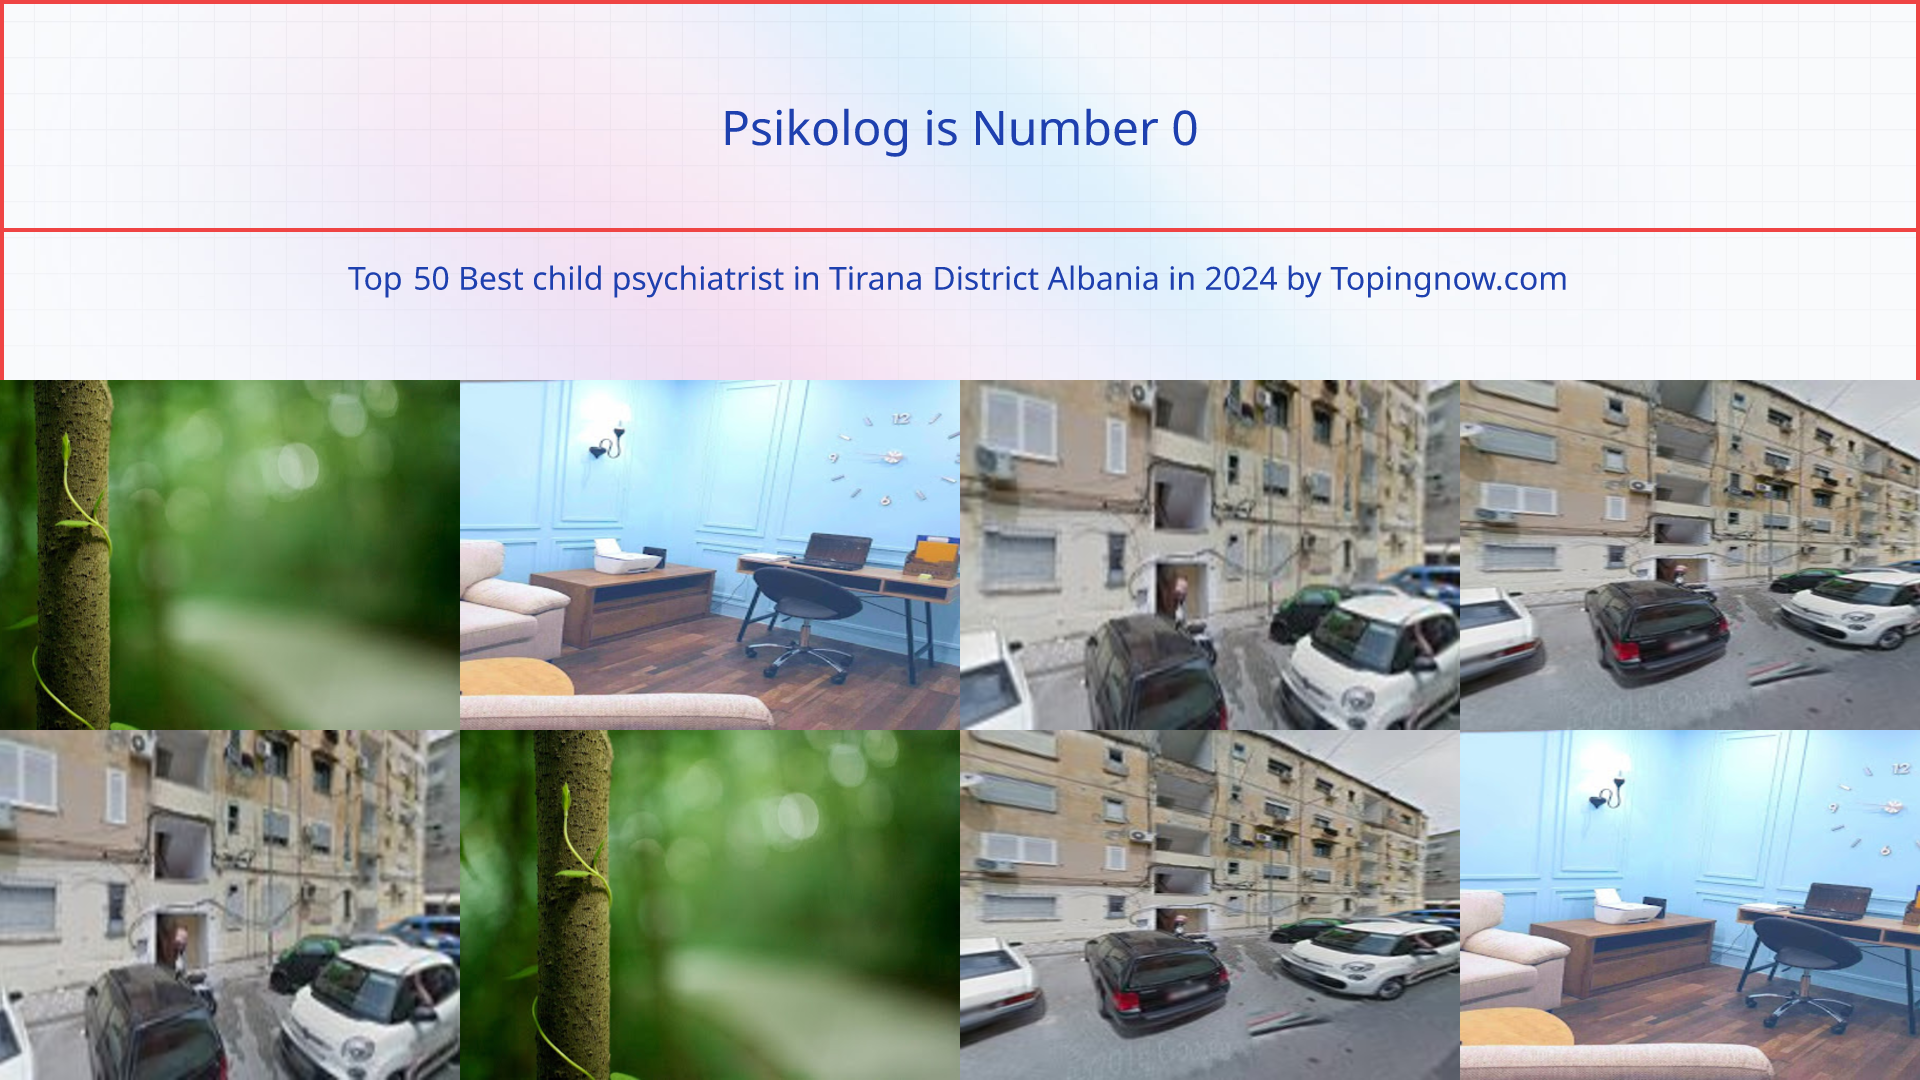 Psikolog: Top 50 Best child psychiatrist in Tirana District Albania in 2024